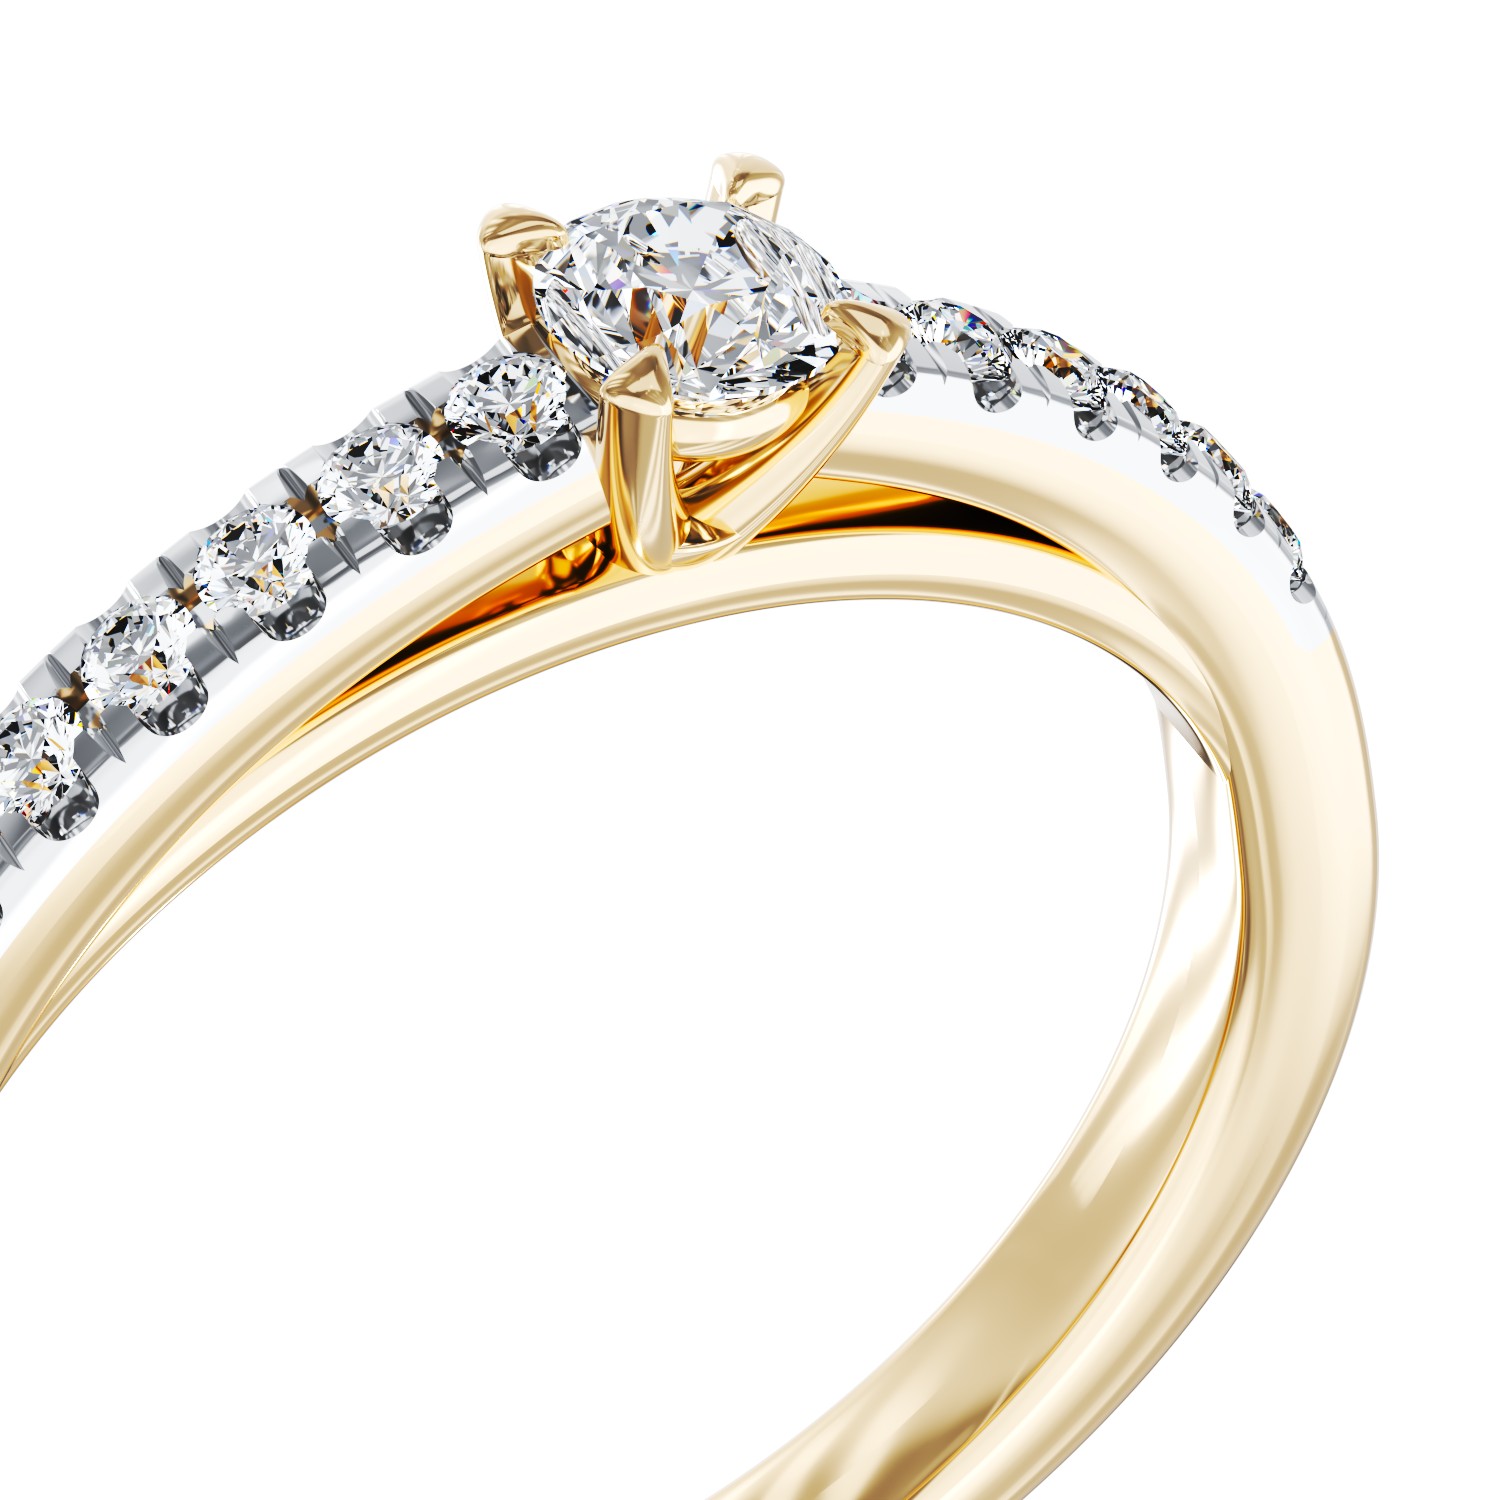 Eljegyzési gyűrű 18K-os sárga aranyból 0,24ct gyémánttal és 0,135ct gyémánttal. Gramm: 2,95